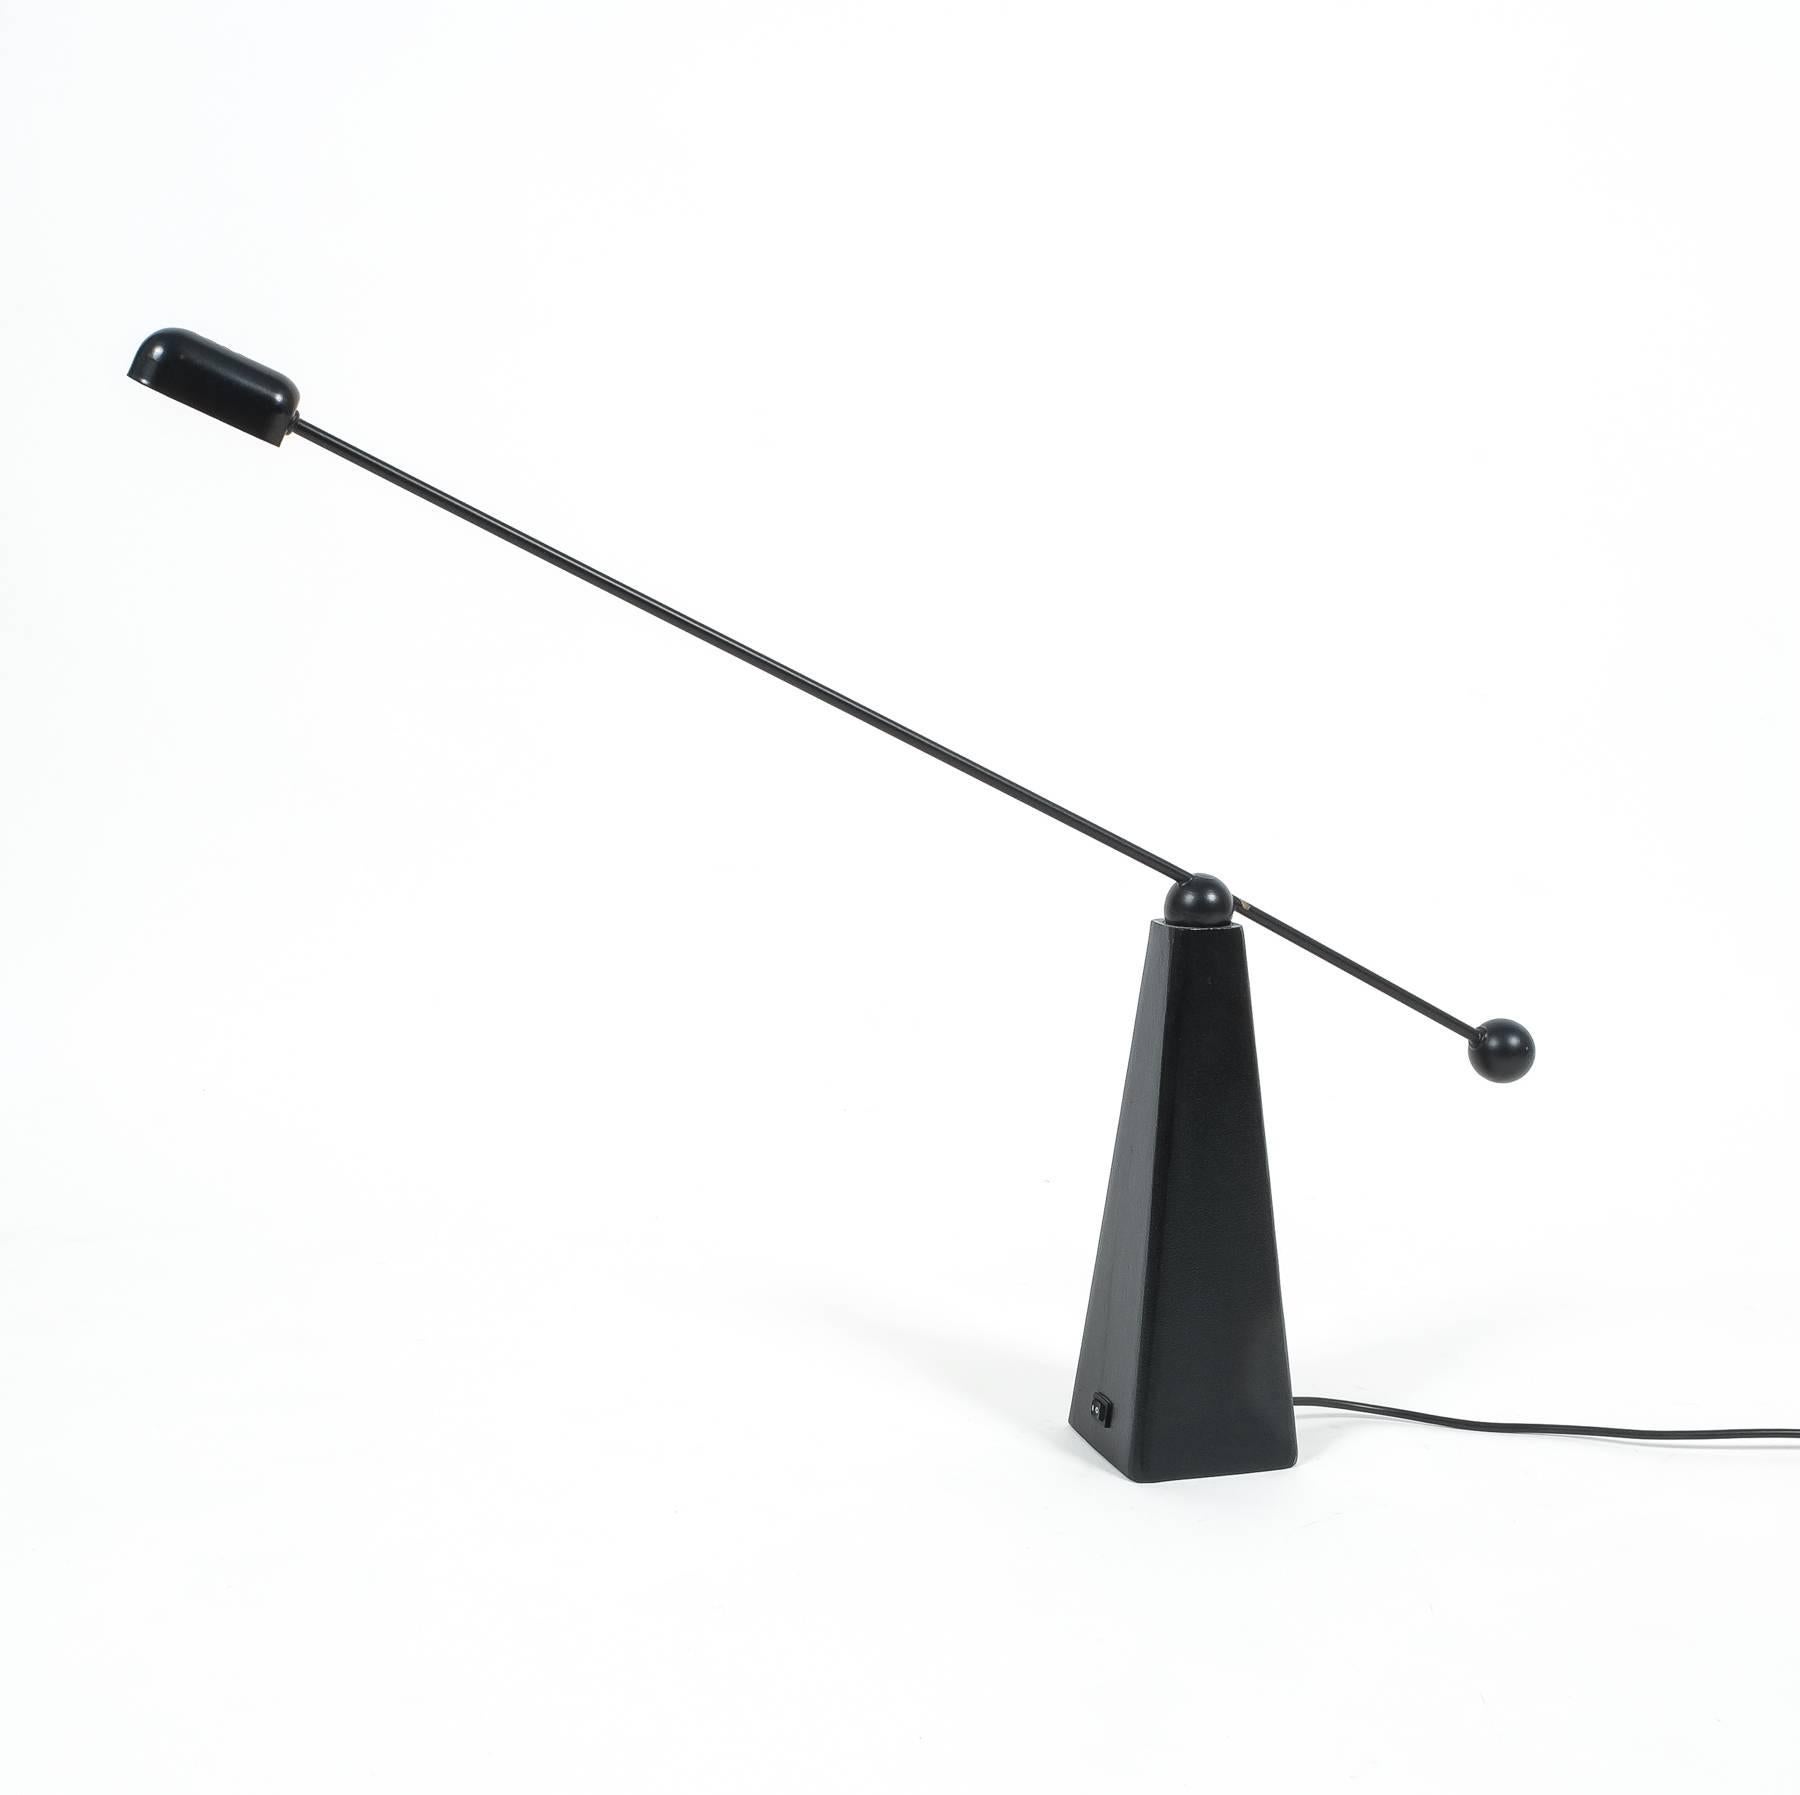 Wunderschöne minimalistische Schreibtischlampe aus schwarzem Metall vom amerikanischen Designer Ron Rezek für Bieffeplast, Italien. Der Gegengewichtsarm ermöglicht es, die Leuchte in alle Richtungen zu schwenken und zu bewegen. Schwerer Pyramidenfuß